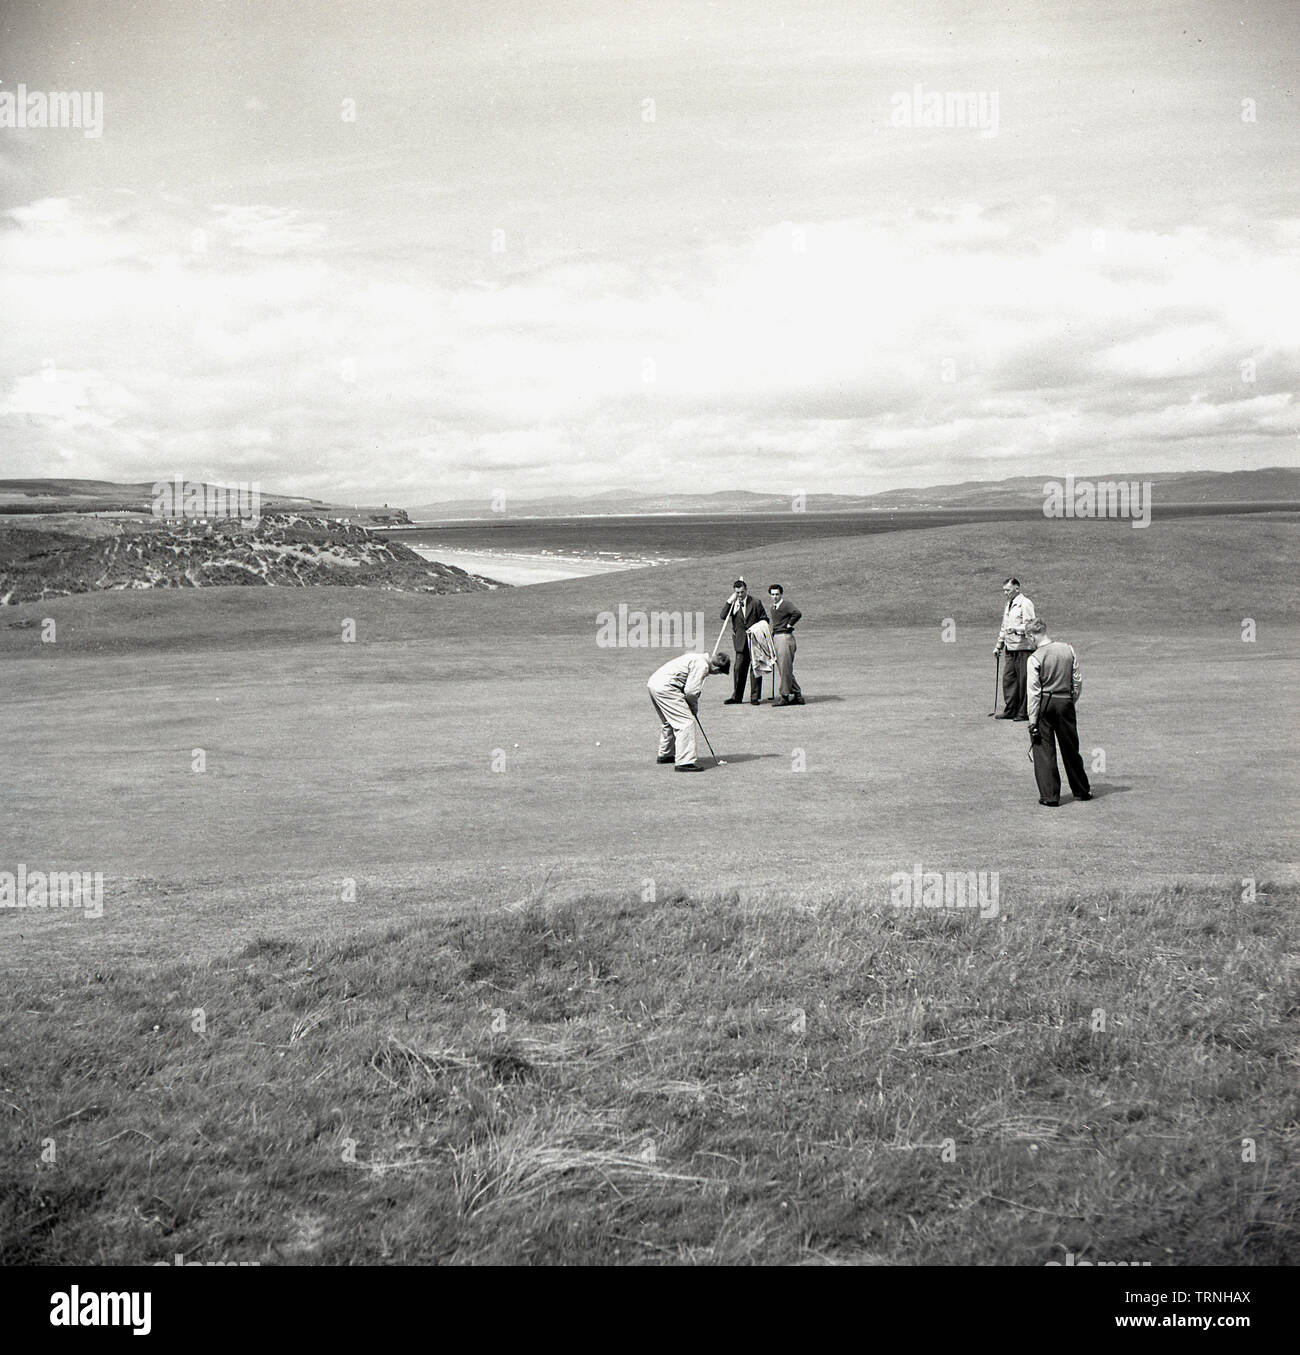 Années 1950, historiques, des golfeurs amateurs sur un green de Royal Portrush Golf Club sur le Nord de la côte de Causeway Antrim en coopération, d'Antrim, en Irlande du Nord. Banque D'Images